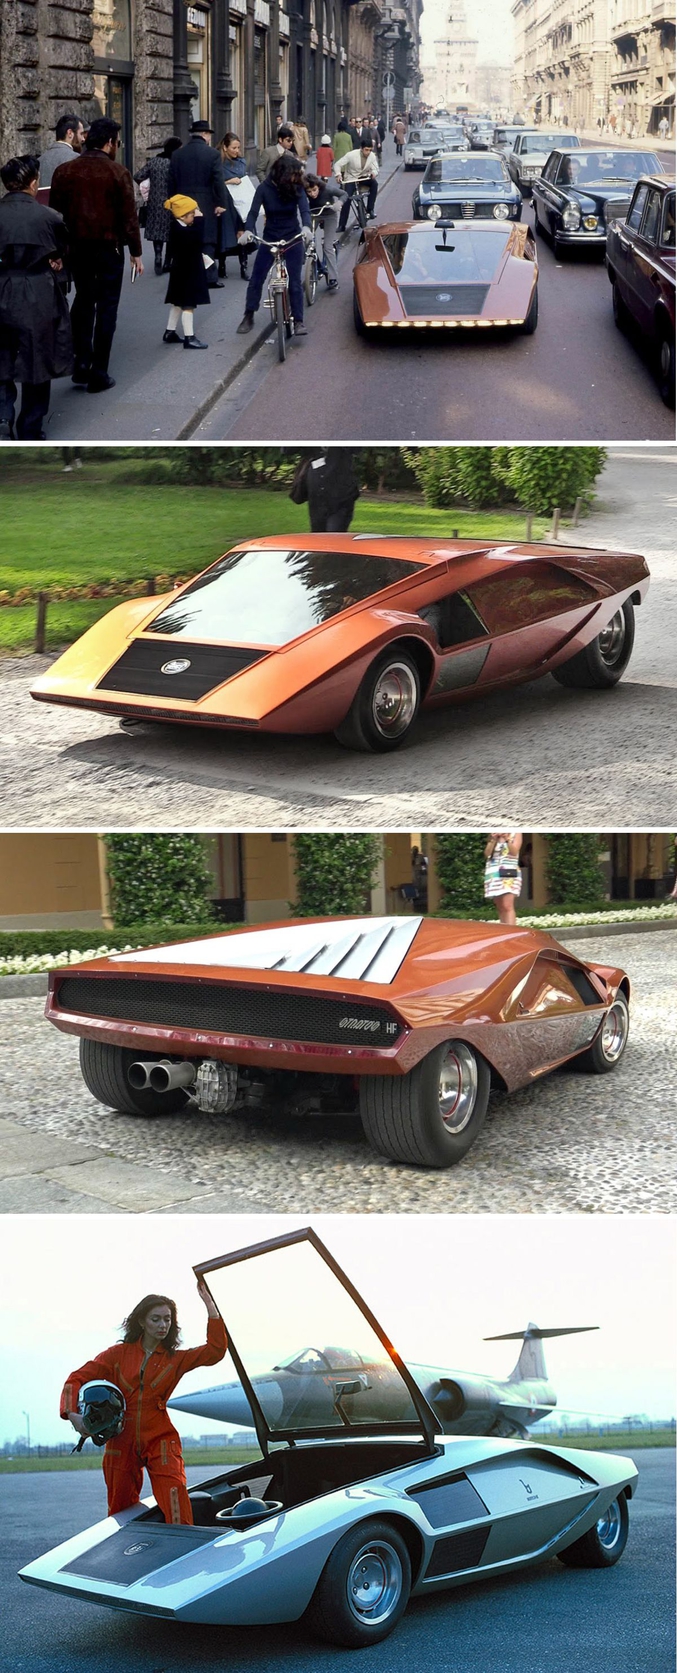 Première image, les passants découvrent dans la rue ce prototype conçu par Lancia en 1970. La Stratos fut la première voiture conçue en vue des rallyes internationaux, ce qui lui permit de gagner face aux autres modèles, qui, à l'époque, étaient de simples adaptations de versions initialement prévues pour l'usage routier de la grande série. 
La Stratos fut développée sous la responsabilité de l'ingénieur Nicola Materazzi. 
La version finale pesait entre 900 et 950 kg pour une puissance de 190 à 300 chevaux.